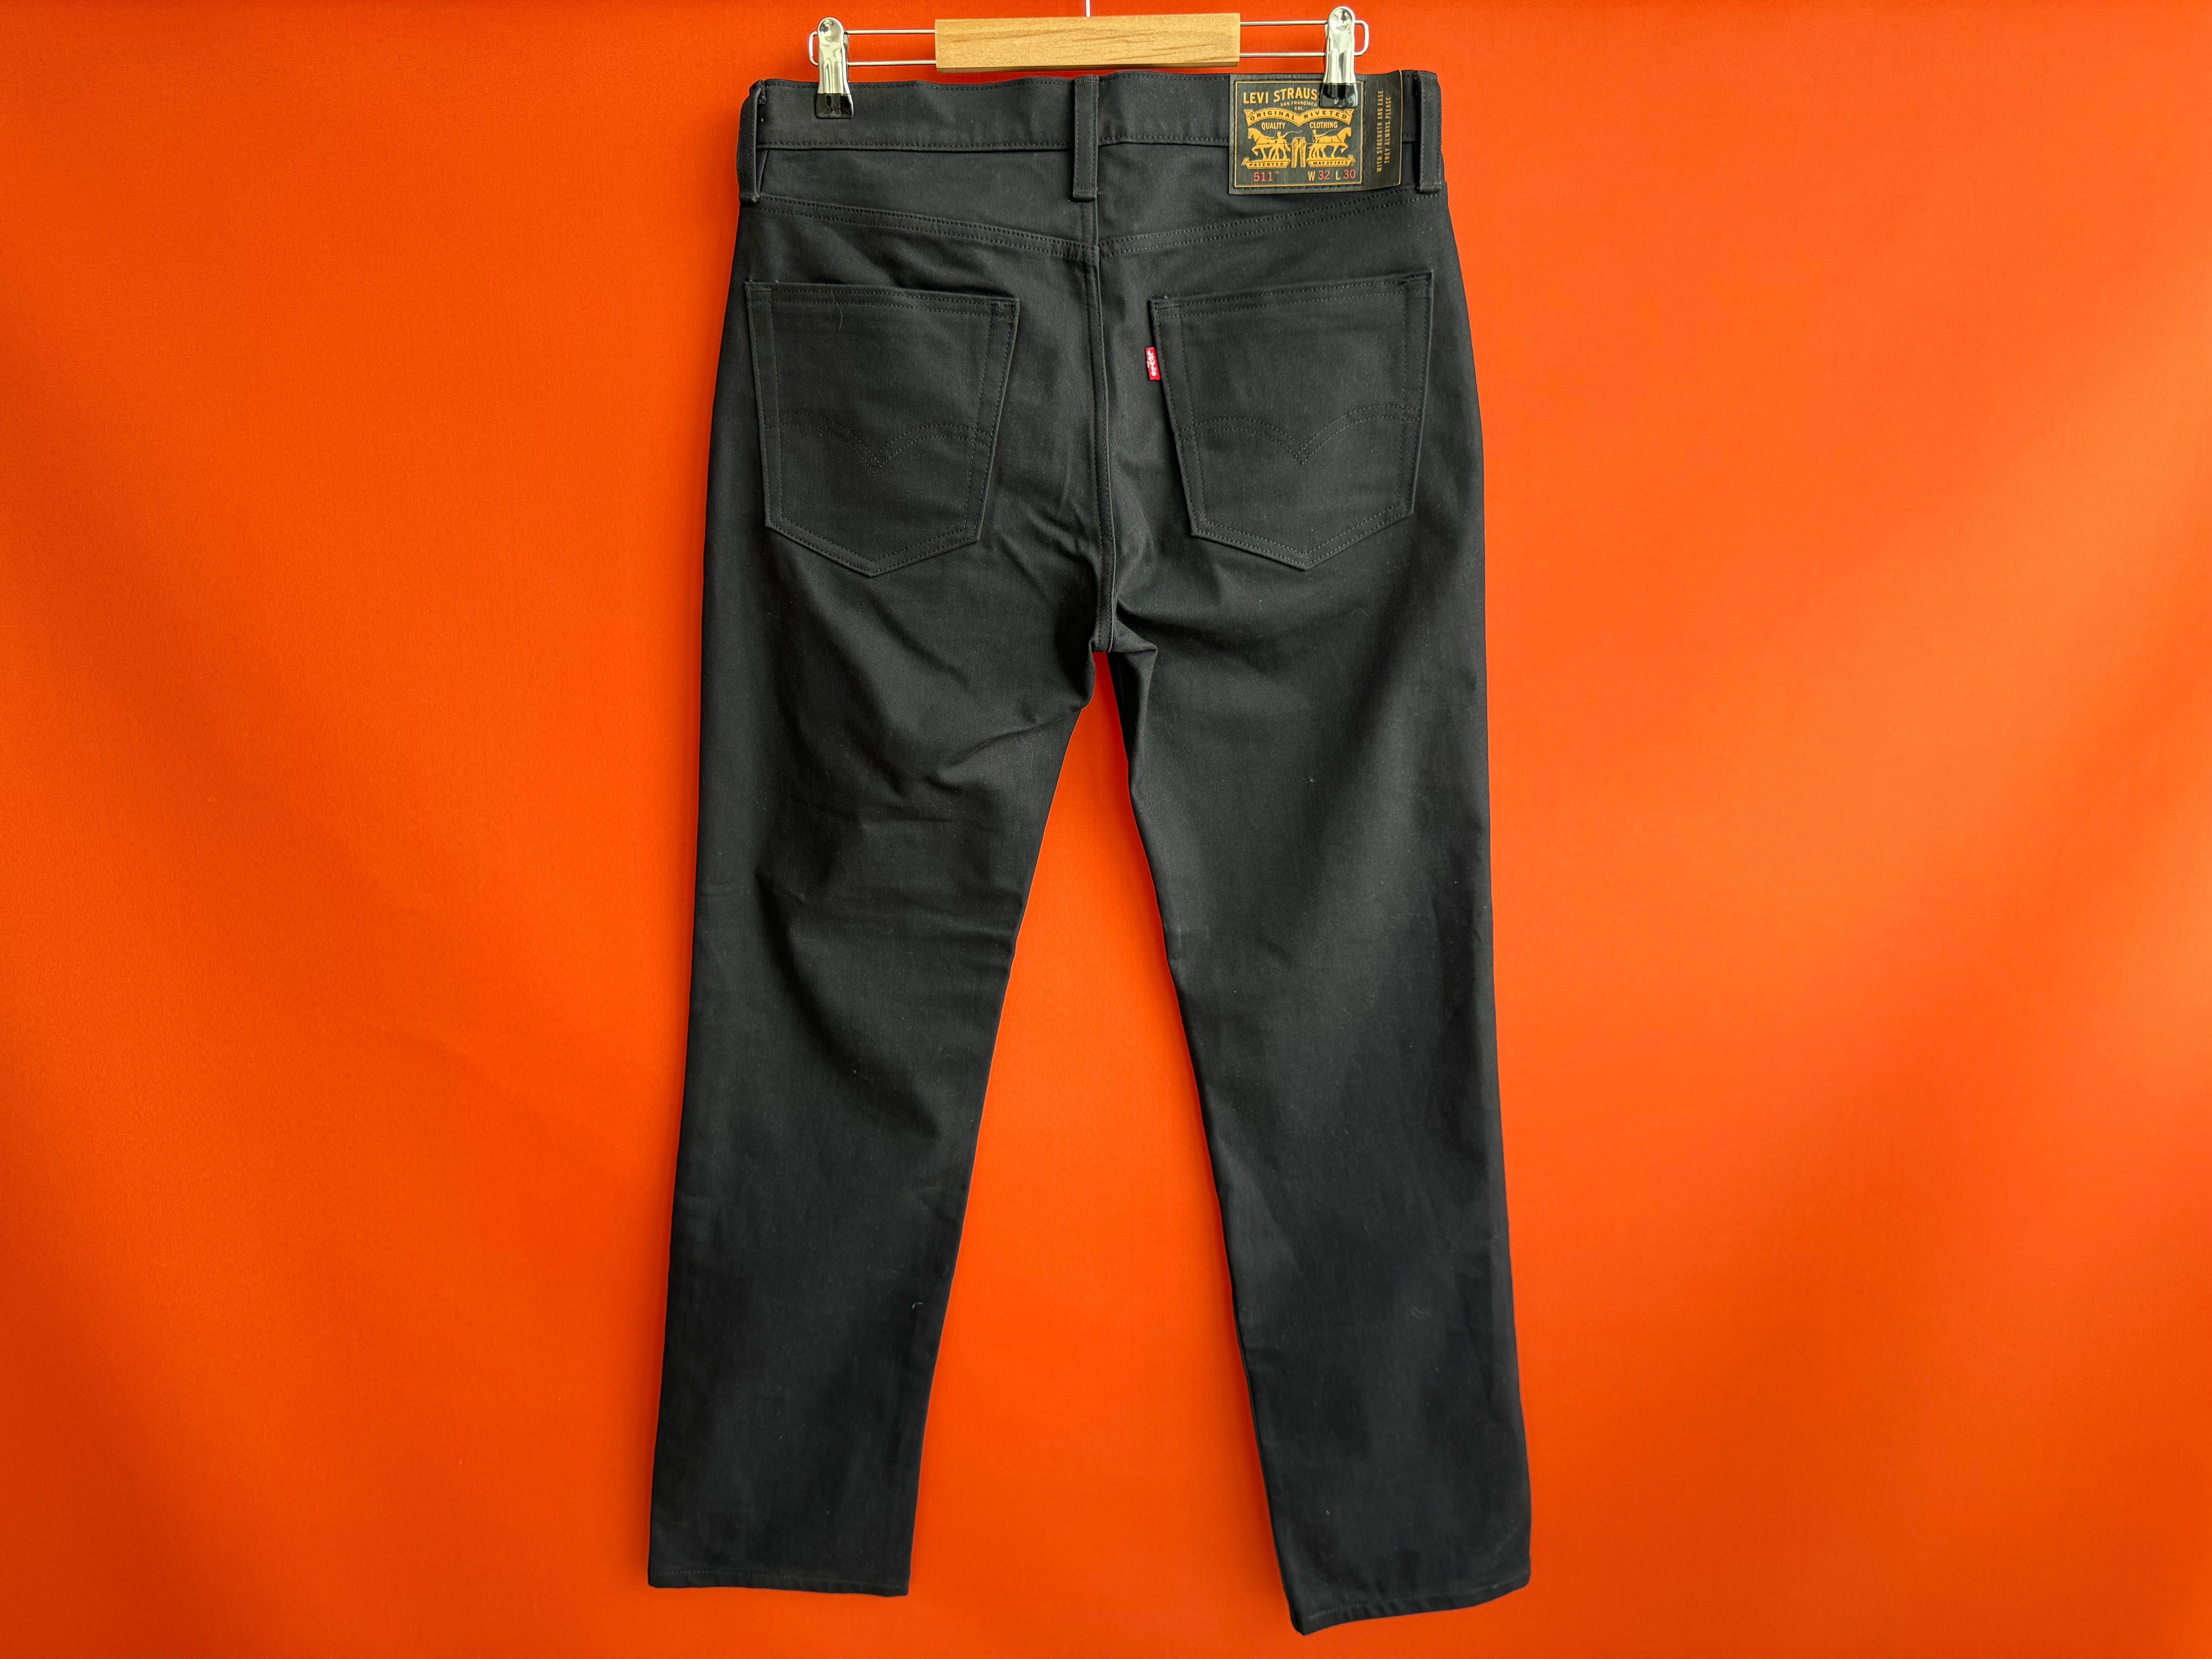 Levis Levi’s 511 оригинал мужские джинсы штаны размер 32 Б У